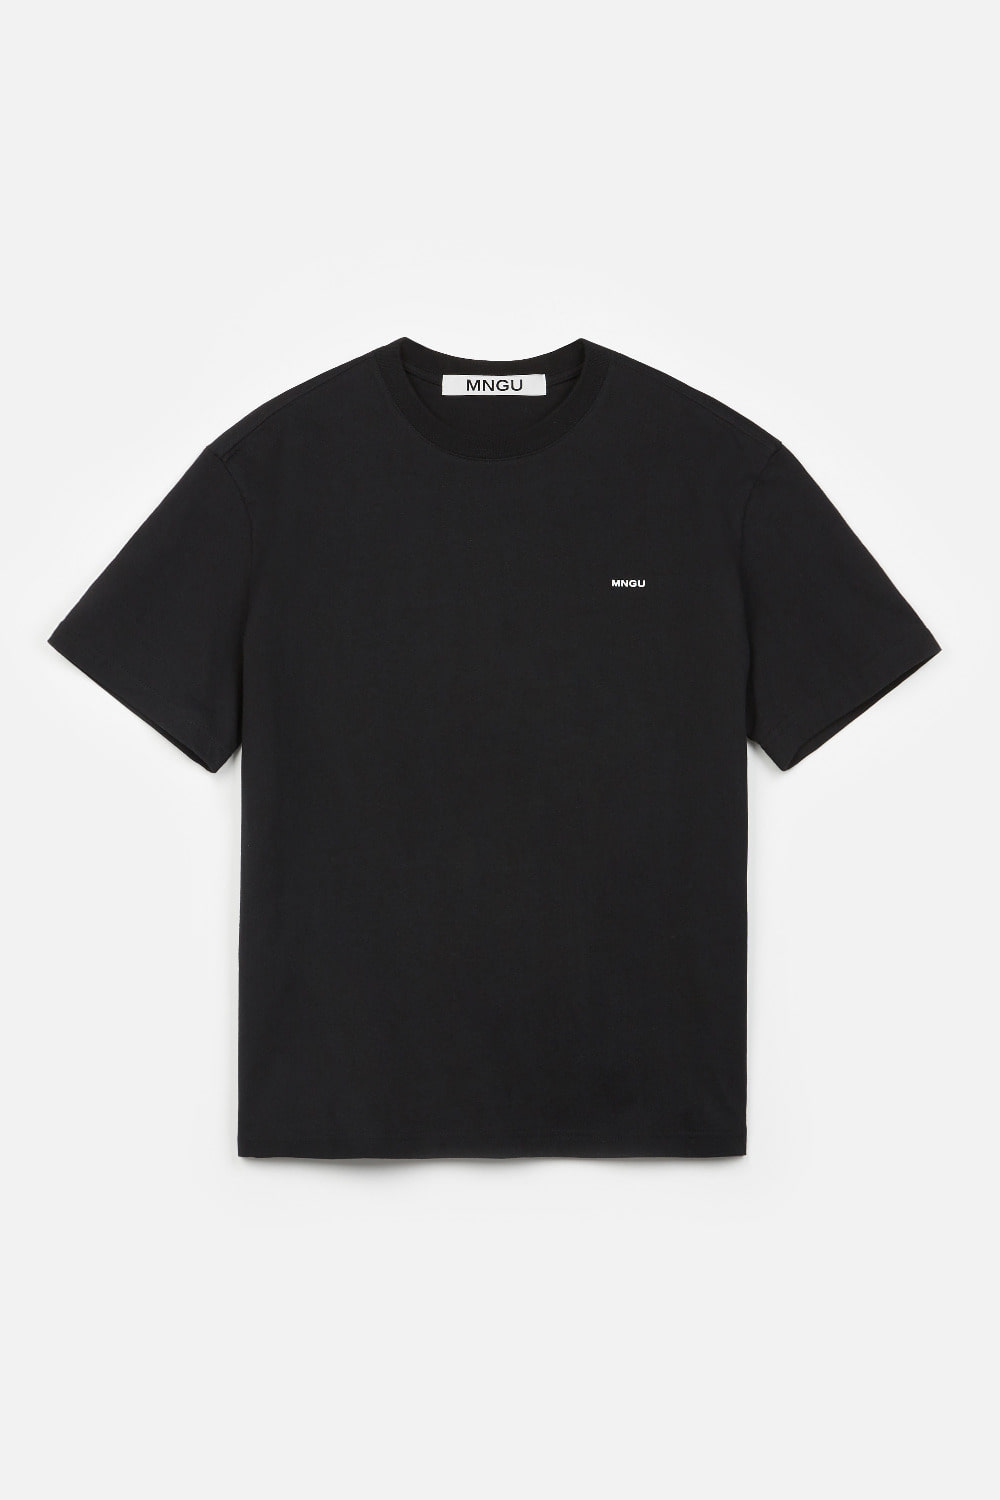 [품절] 오버사이즈드 로고 티셔츠  IN 블랙